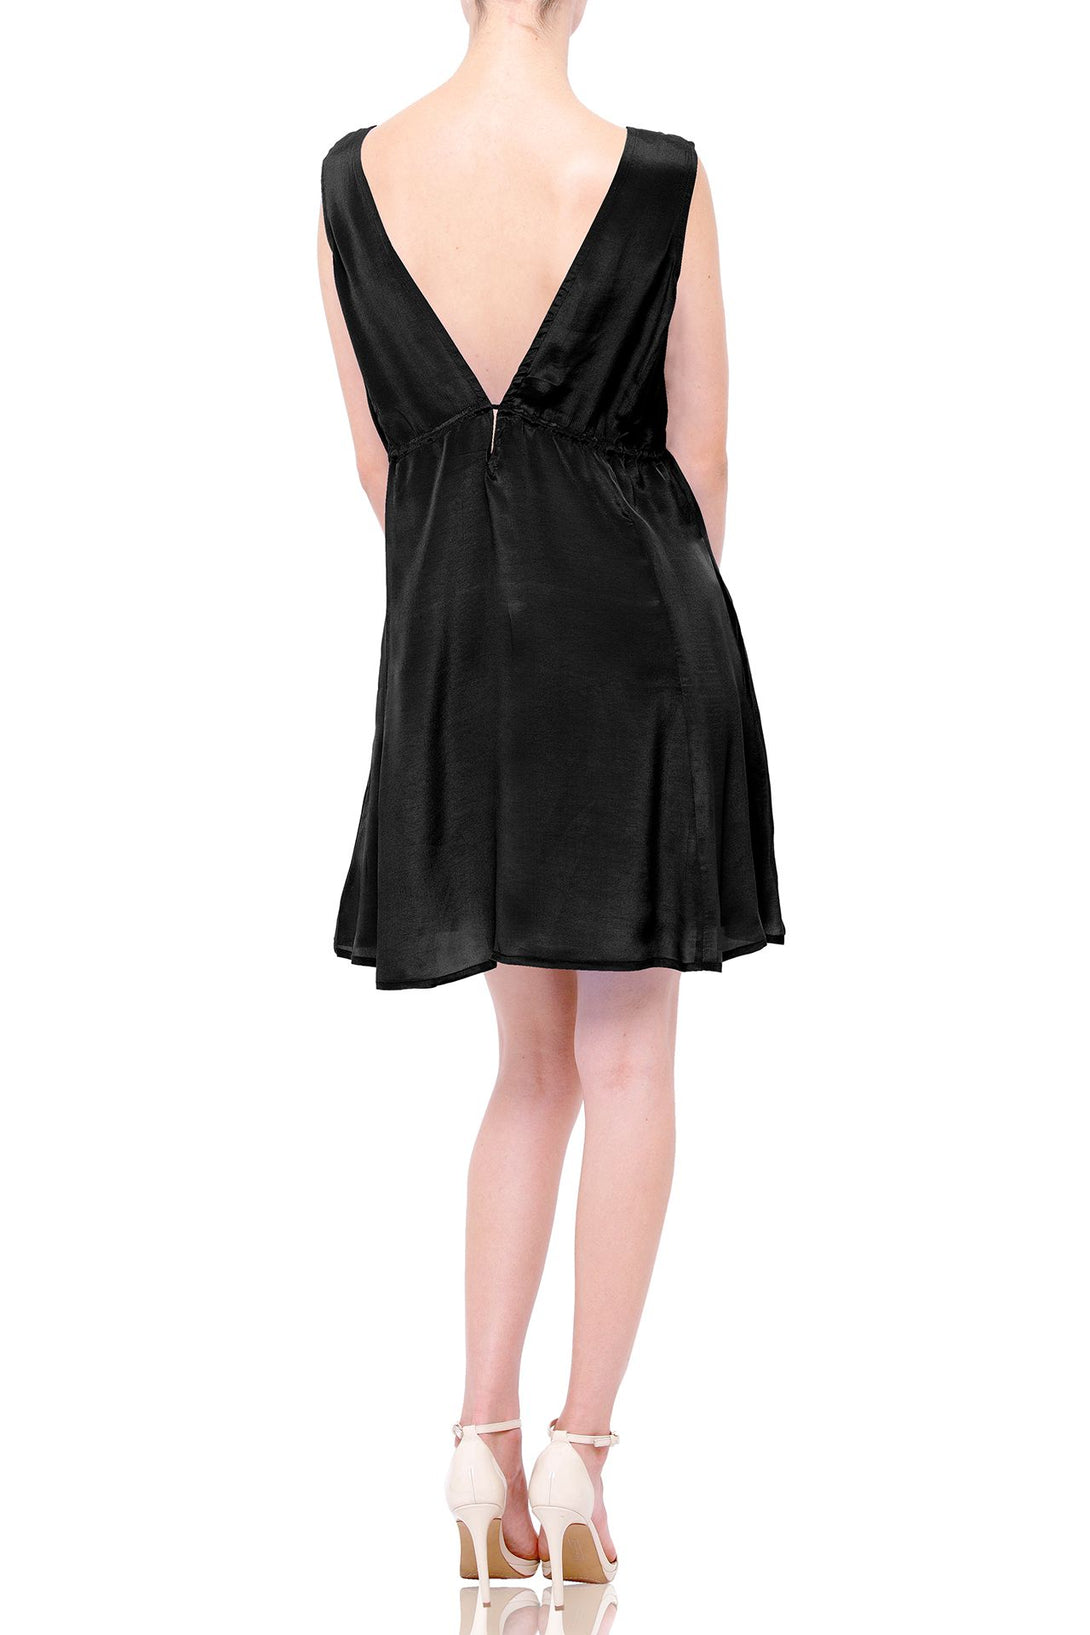  dress black mini, sleeveless dress mini, Shahida Parides, sexy mini dresses for women,